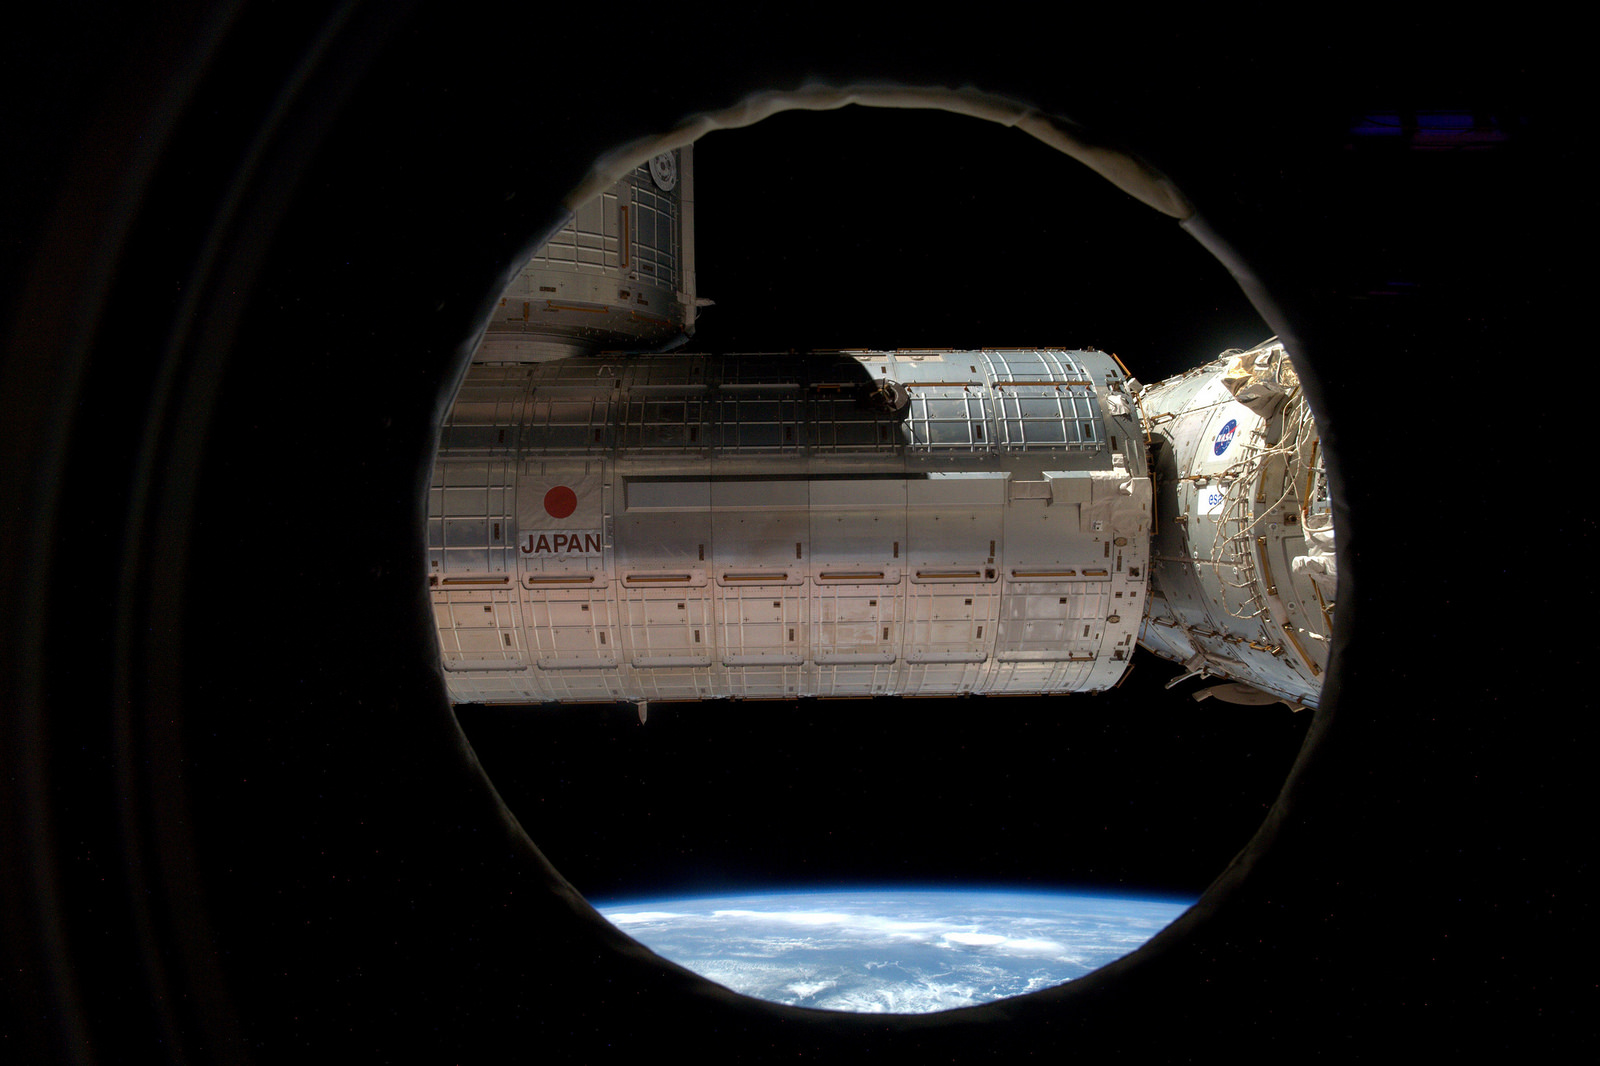 La vista dal boccaporto anteriore del Nodo 3 prima dell'aggancio del modulo PMM. Credit: ESA/NASA